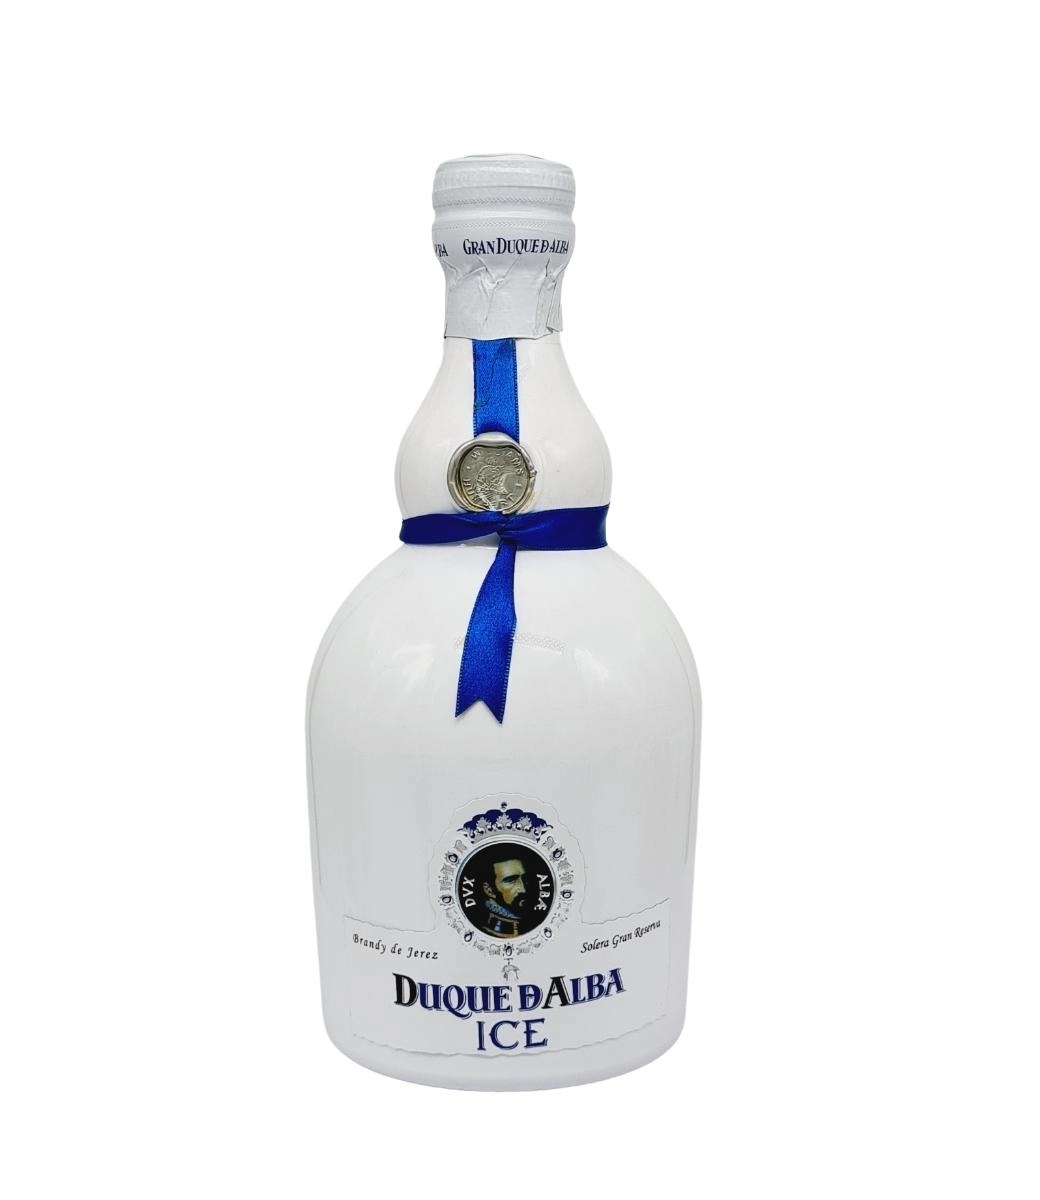 Gran Duque D’Alba ICE Brandy de Jerez 0.7L